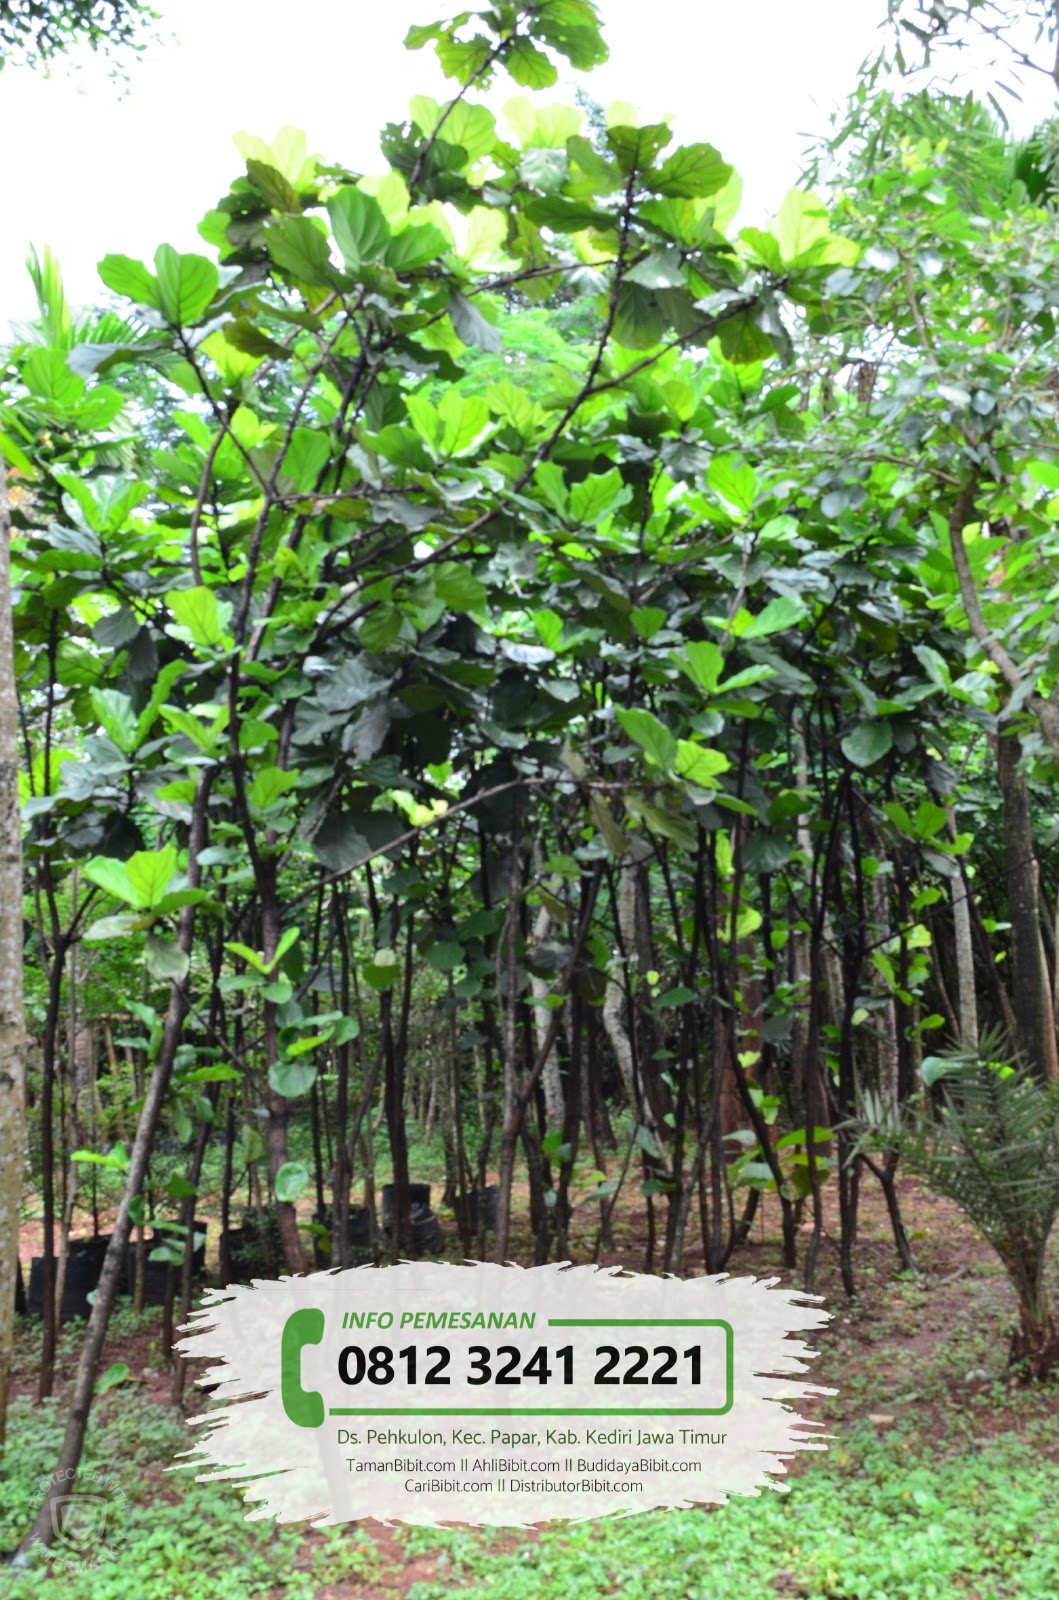 Jual Bibit  Pohon  Ketapang  Daun Lebar CariBibit com